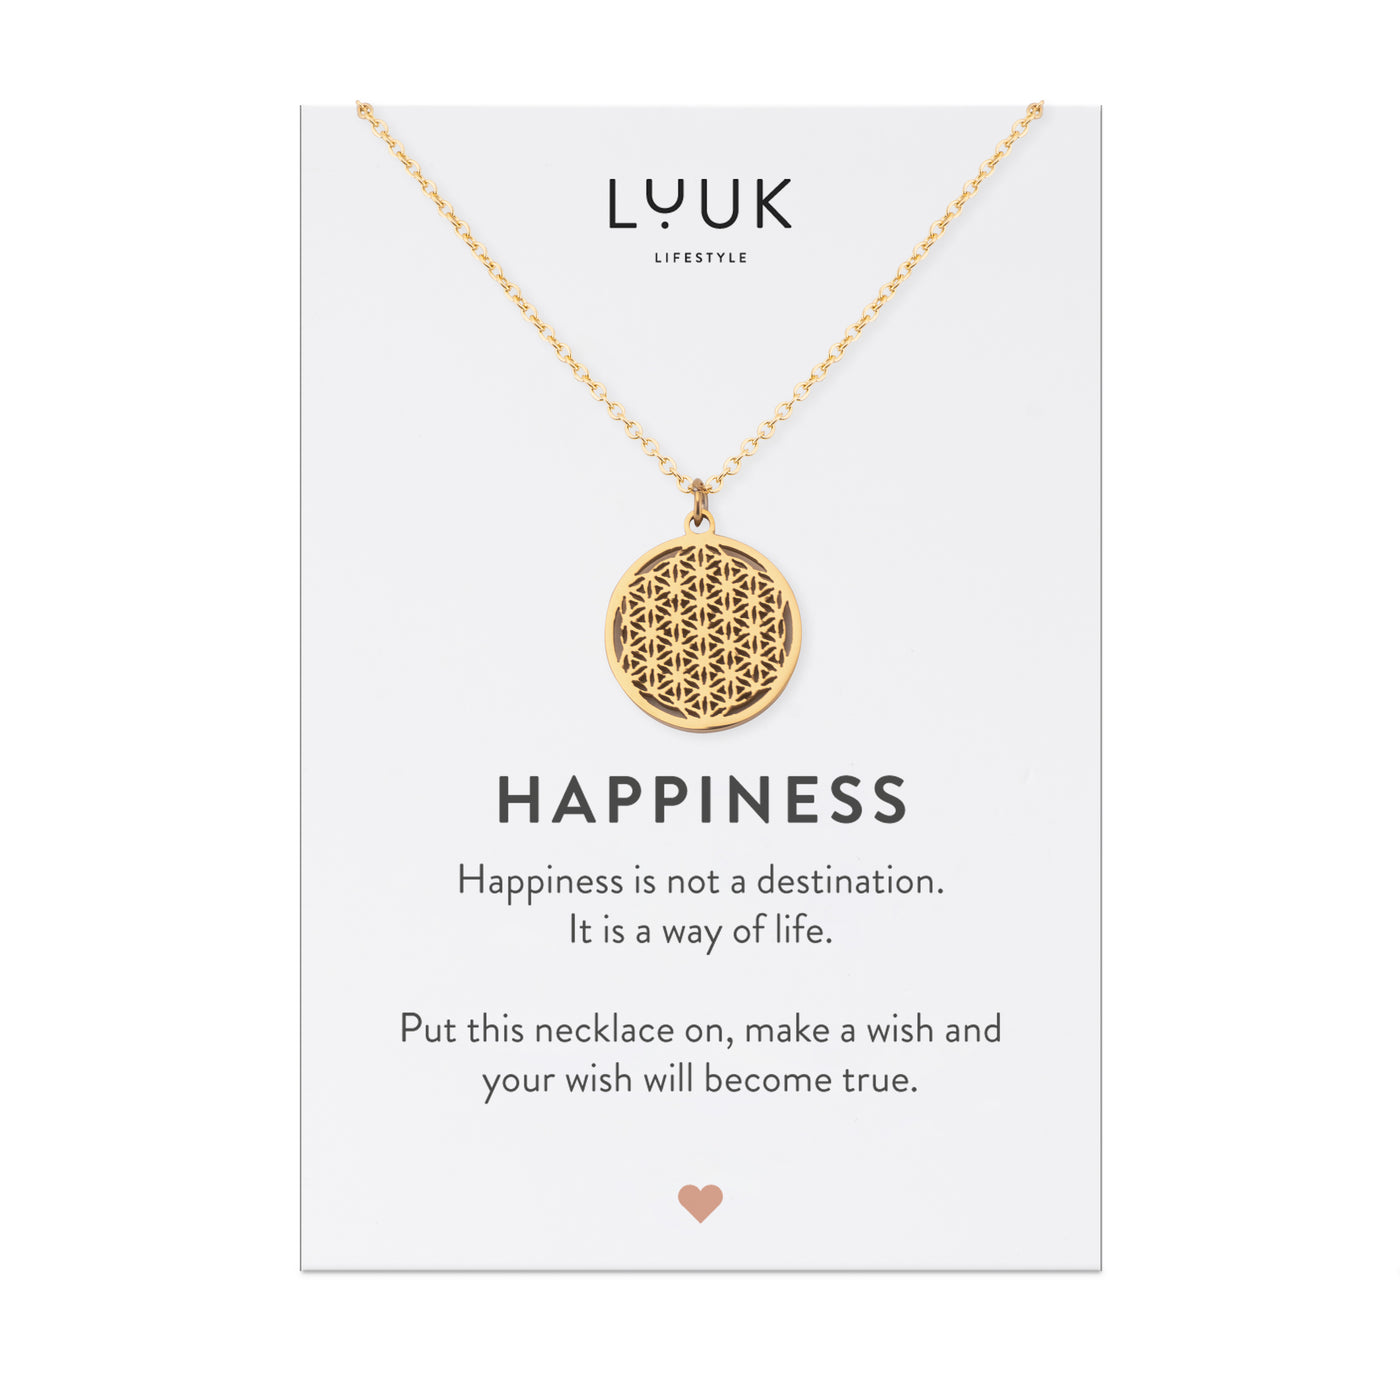 Goldene Halskette mit Blume des Lebens Anhänger auf Happiness Karte von der Brand Luuk Lifestyle.